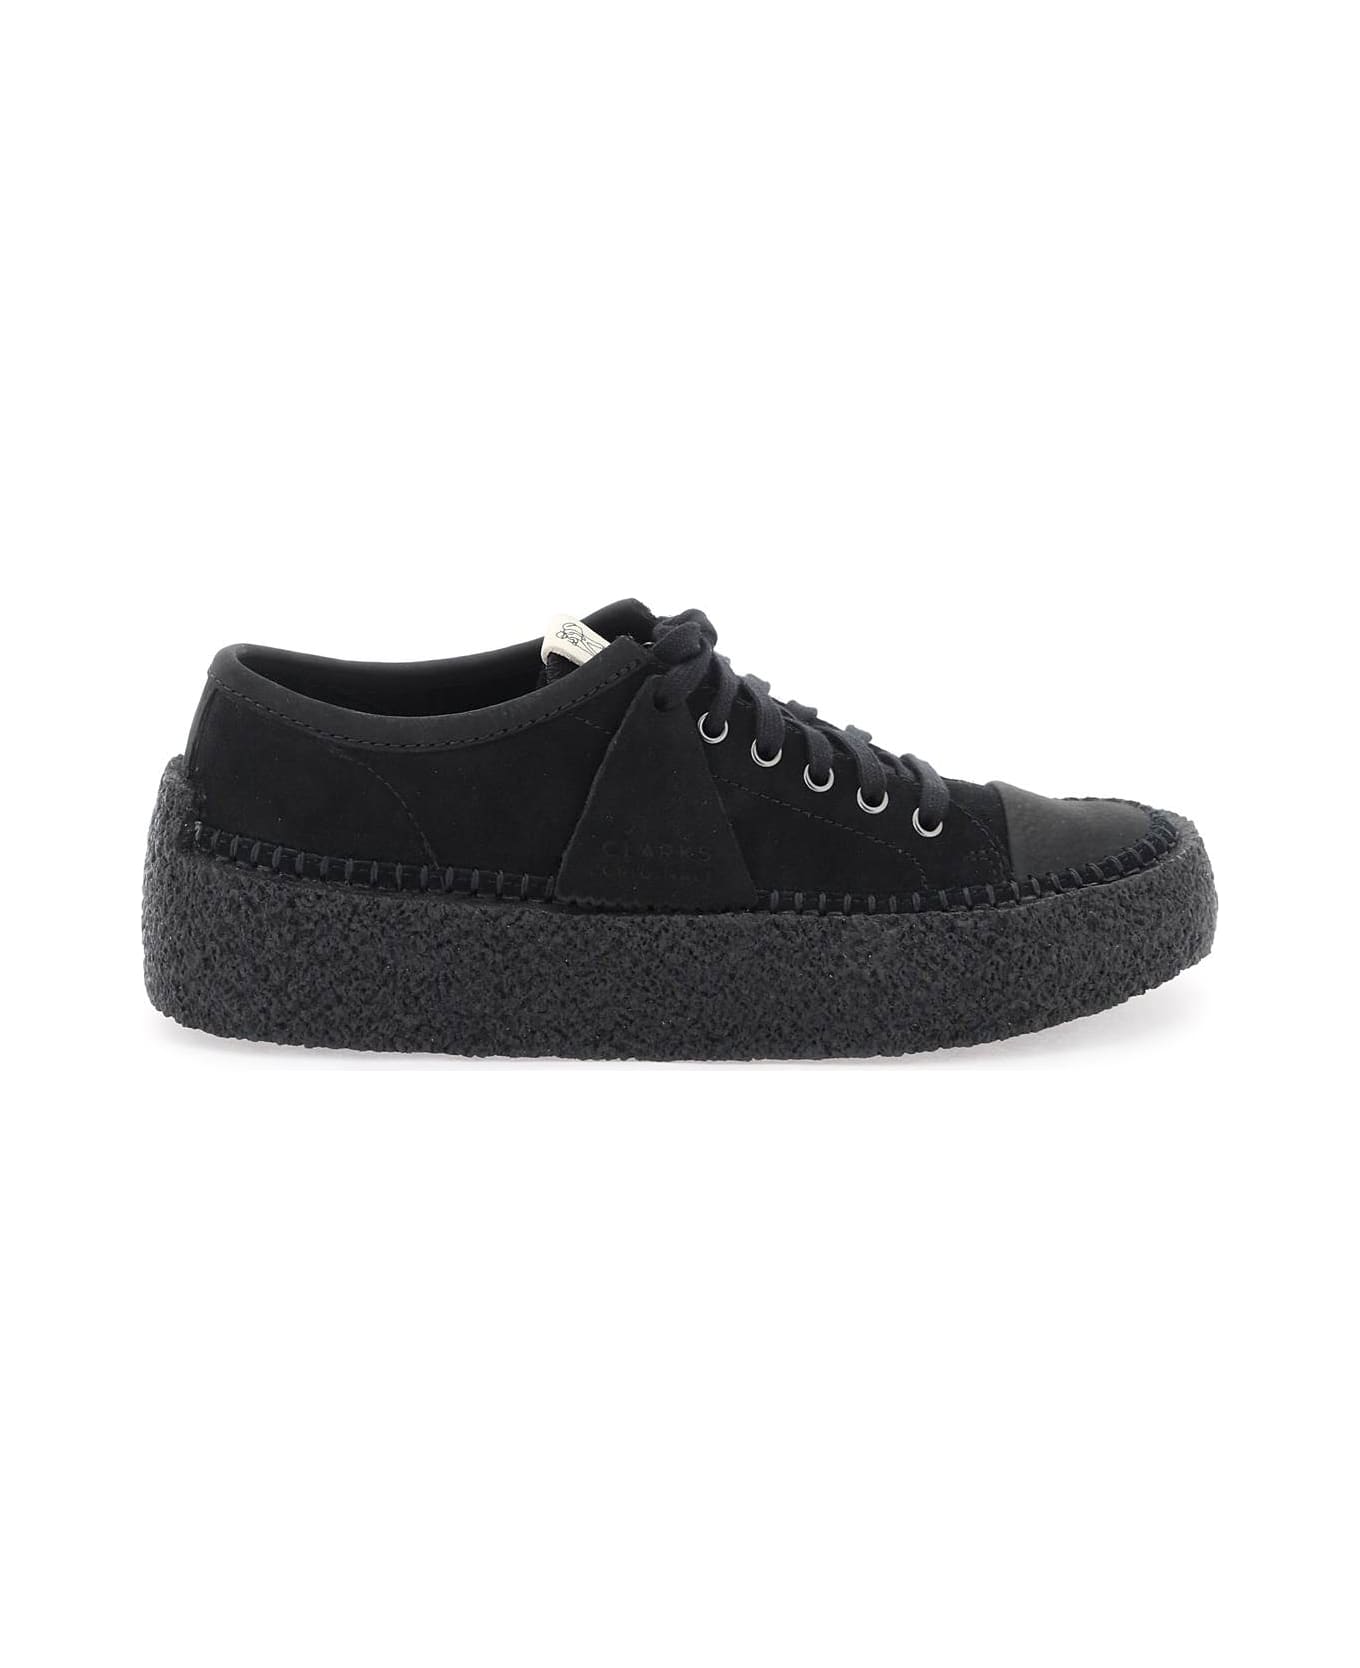 Clarks Suede Leather 'caravan' Sneakers - BLACK (Black)